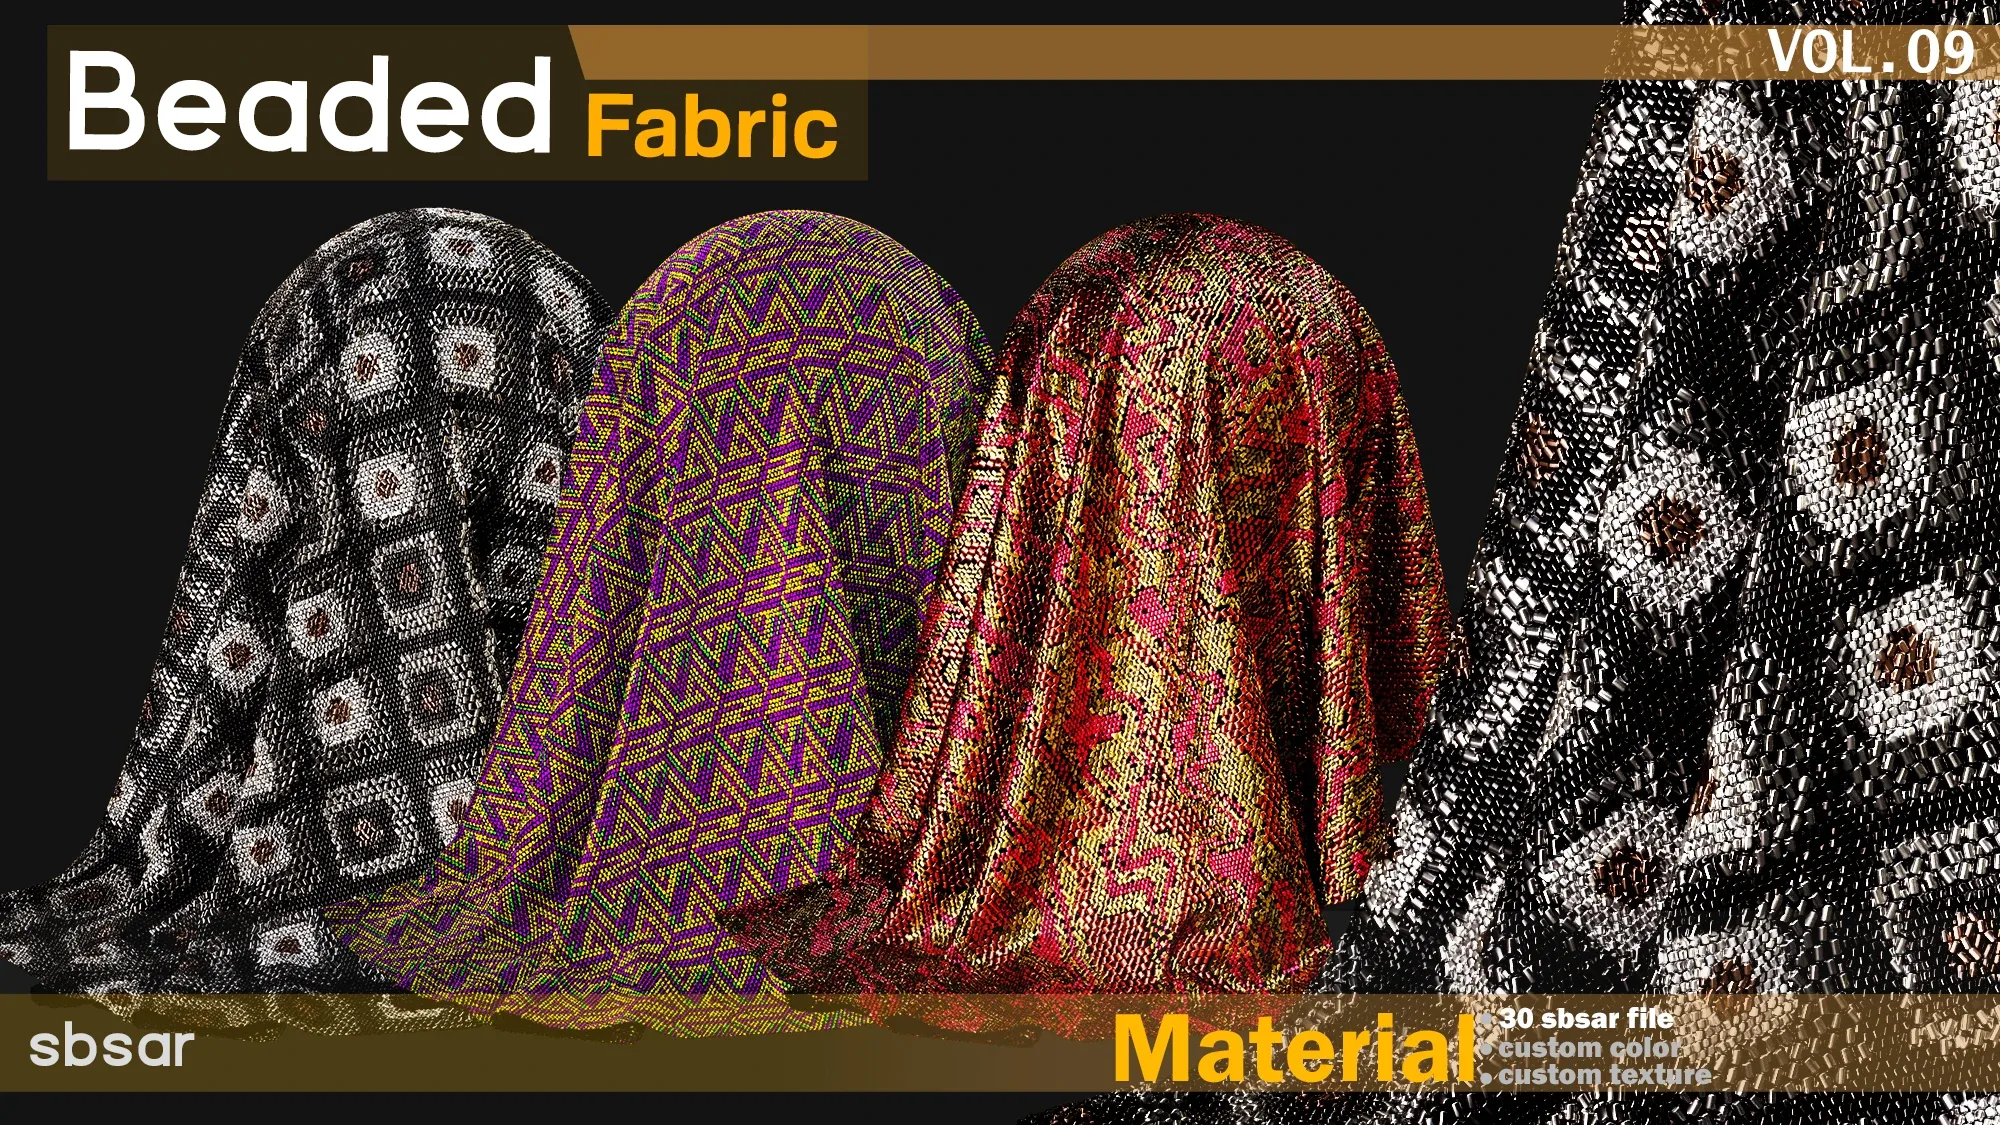 30 Beaded fabric Material -SBSAR -custom color -custom fabric -VOL 09